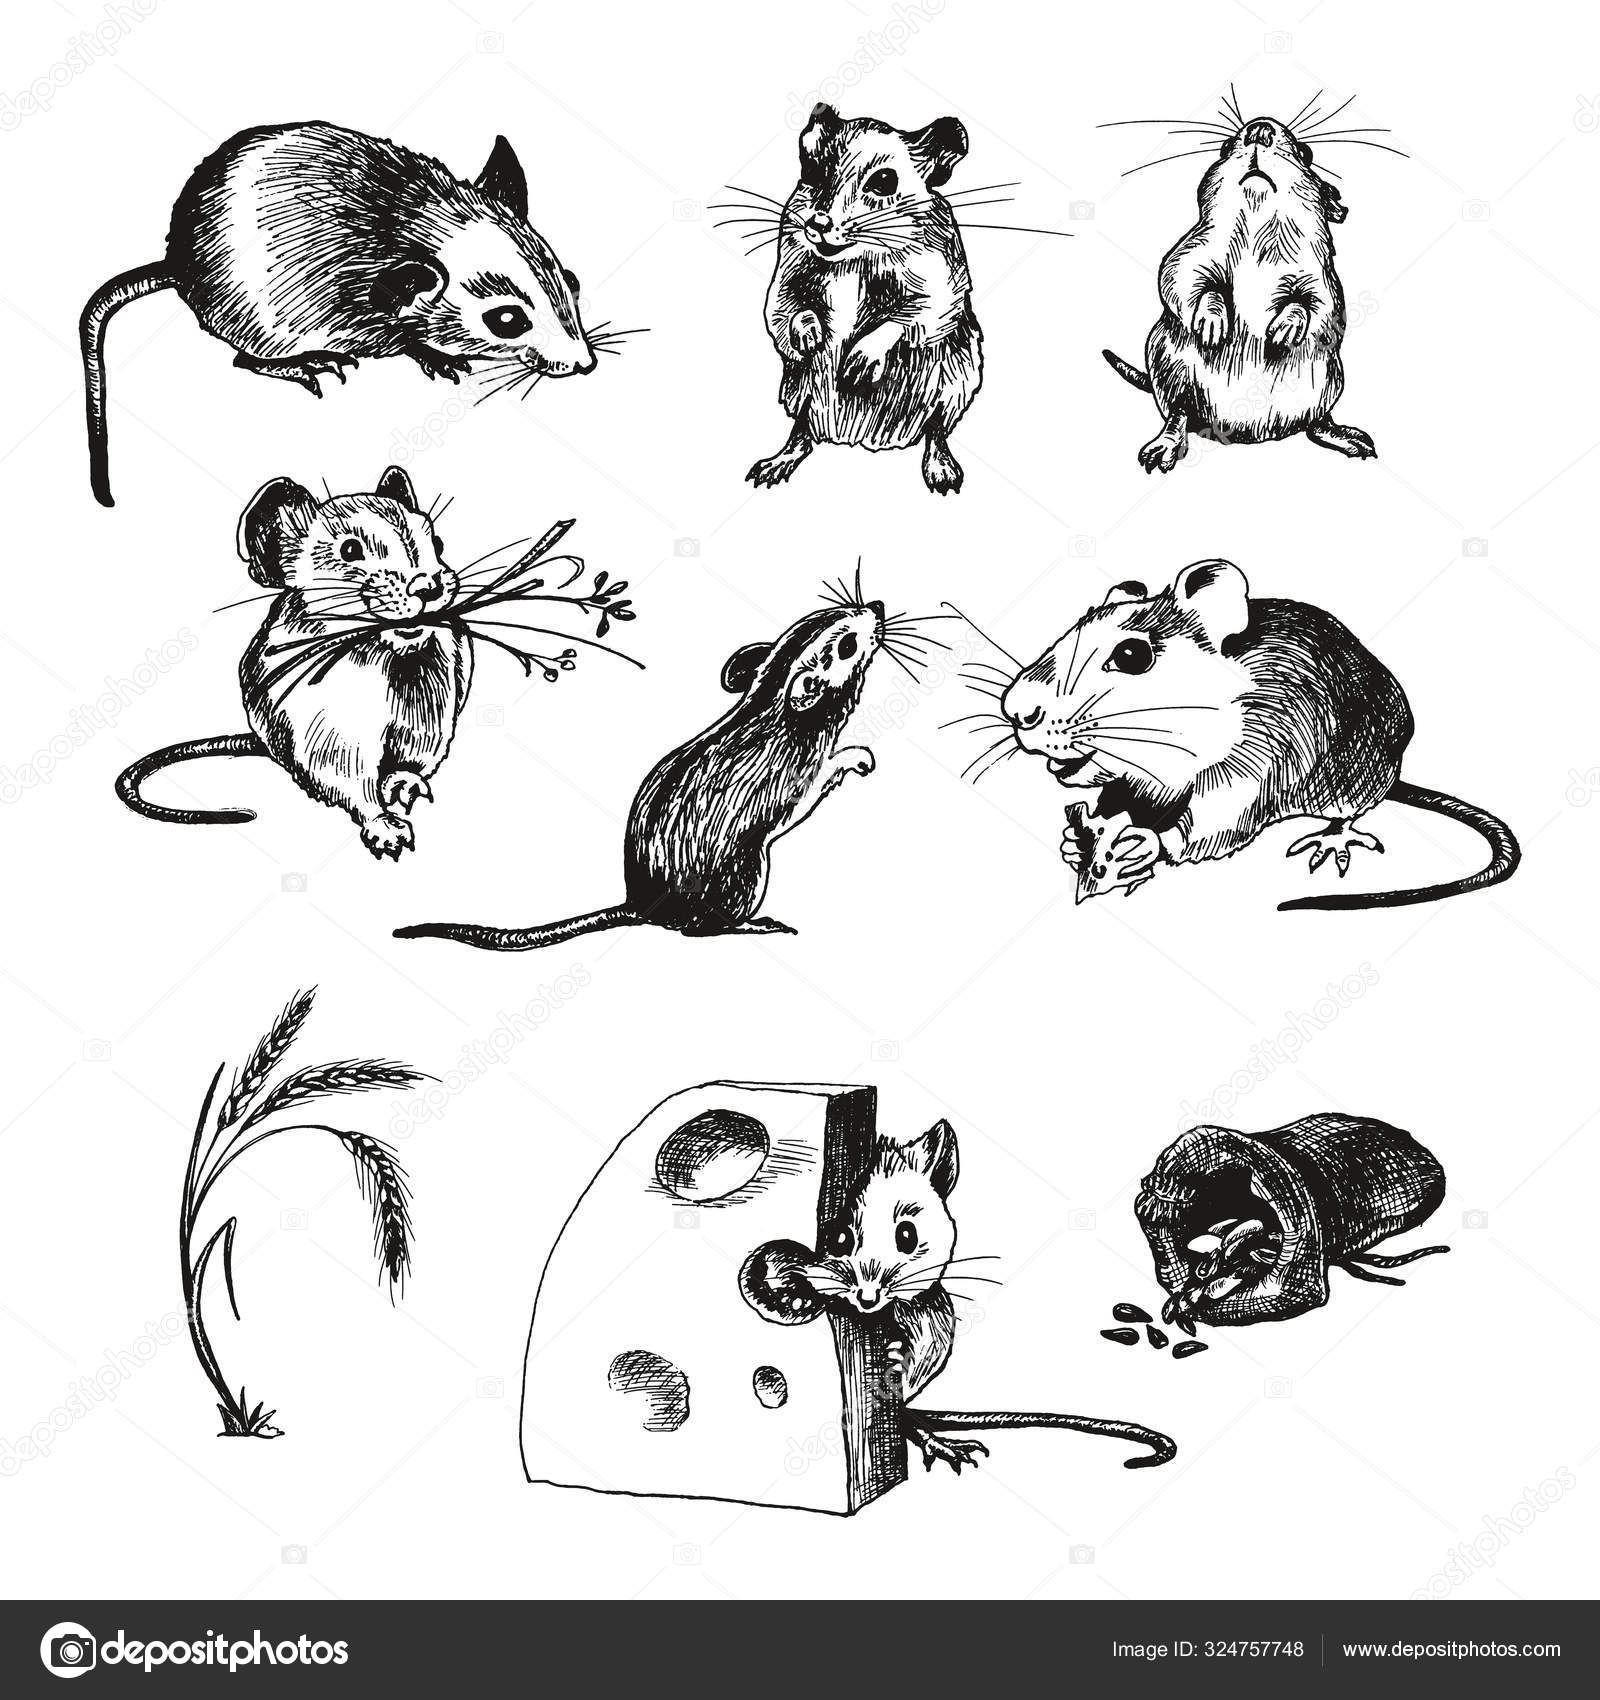 Imagens vetoriais de Rodents